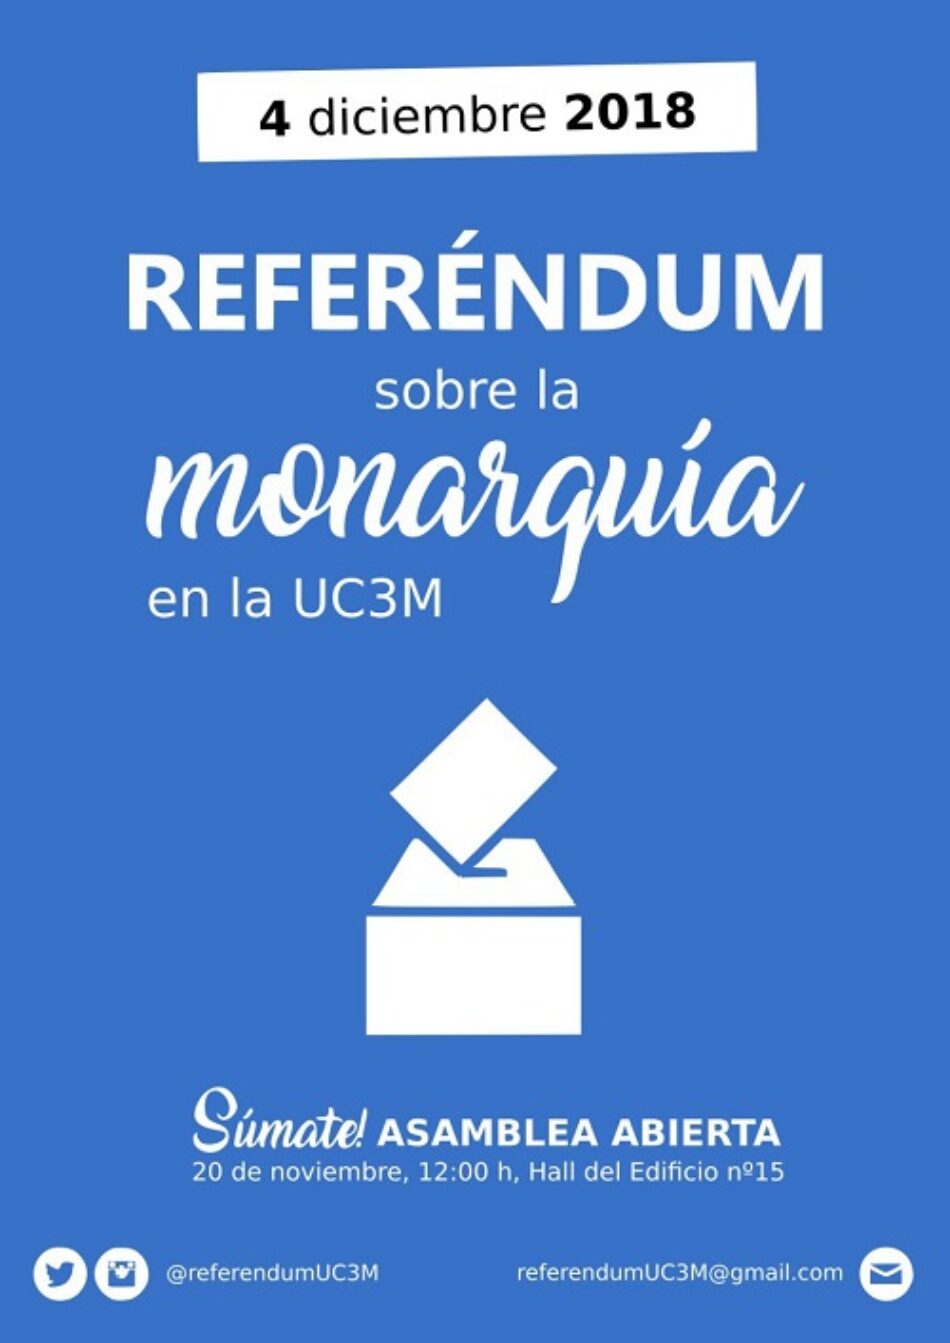 Estudiantes de la Universidad Carlos III de Madrid siguen los pasos de la Autónoma y también organizarán consulta sobre la monarquía